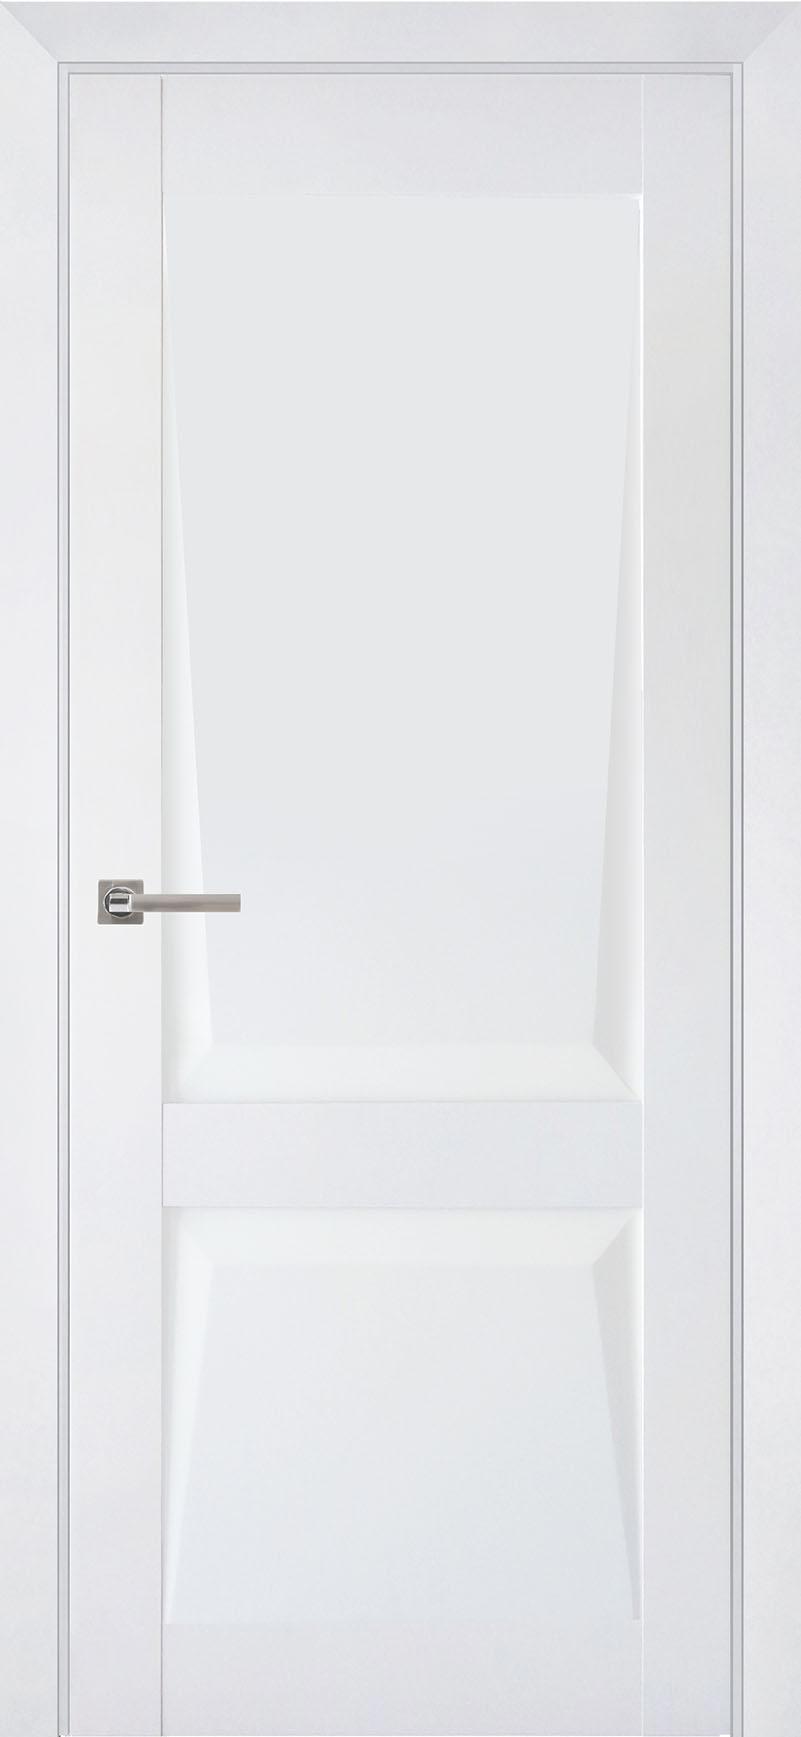 90903208 Межкомнатная дверь Перфекто 101 глухая без замка и петель в комплекте 200x60см белый STLM-0420034 UBERTURE